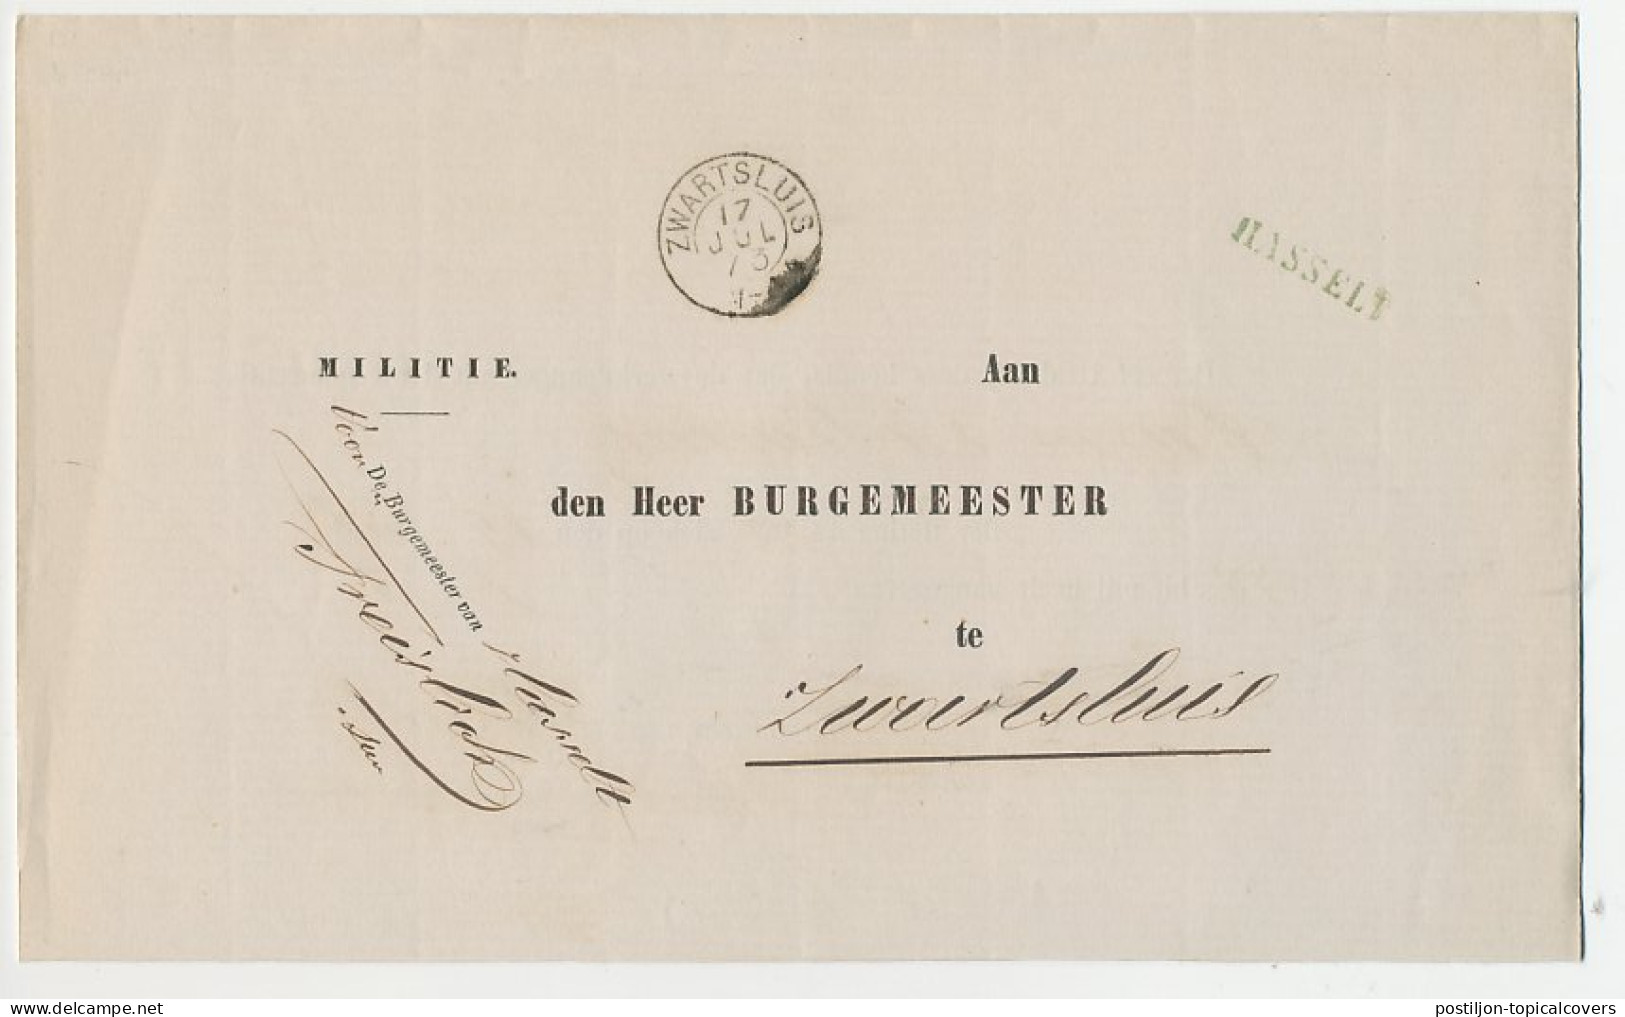 Naamstempel Hasselt 1873 - Storia Postale